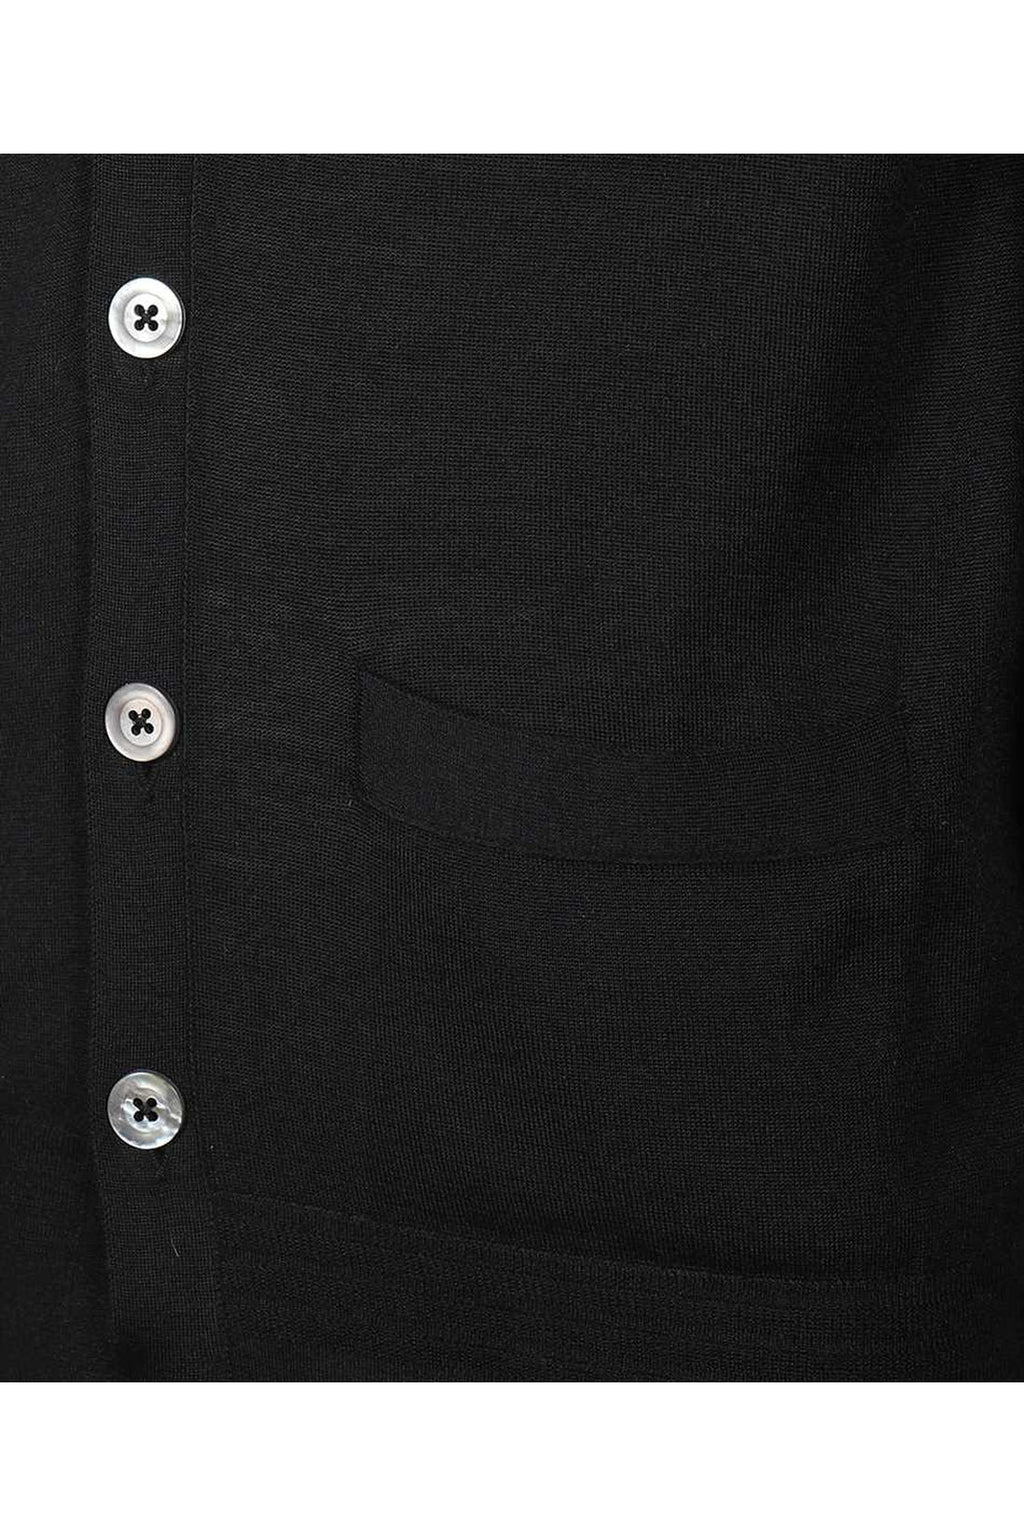 Tom Ford-OUTLET-SALE-Cashmere-silk blend cardigan-ARCHIVIST